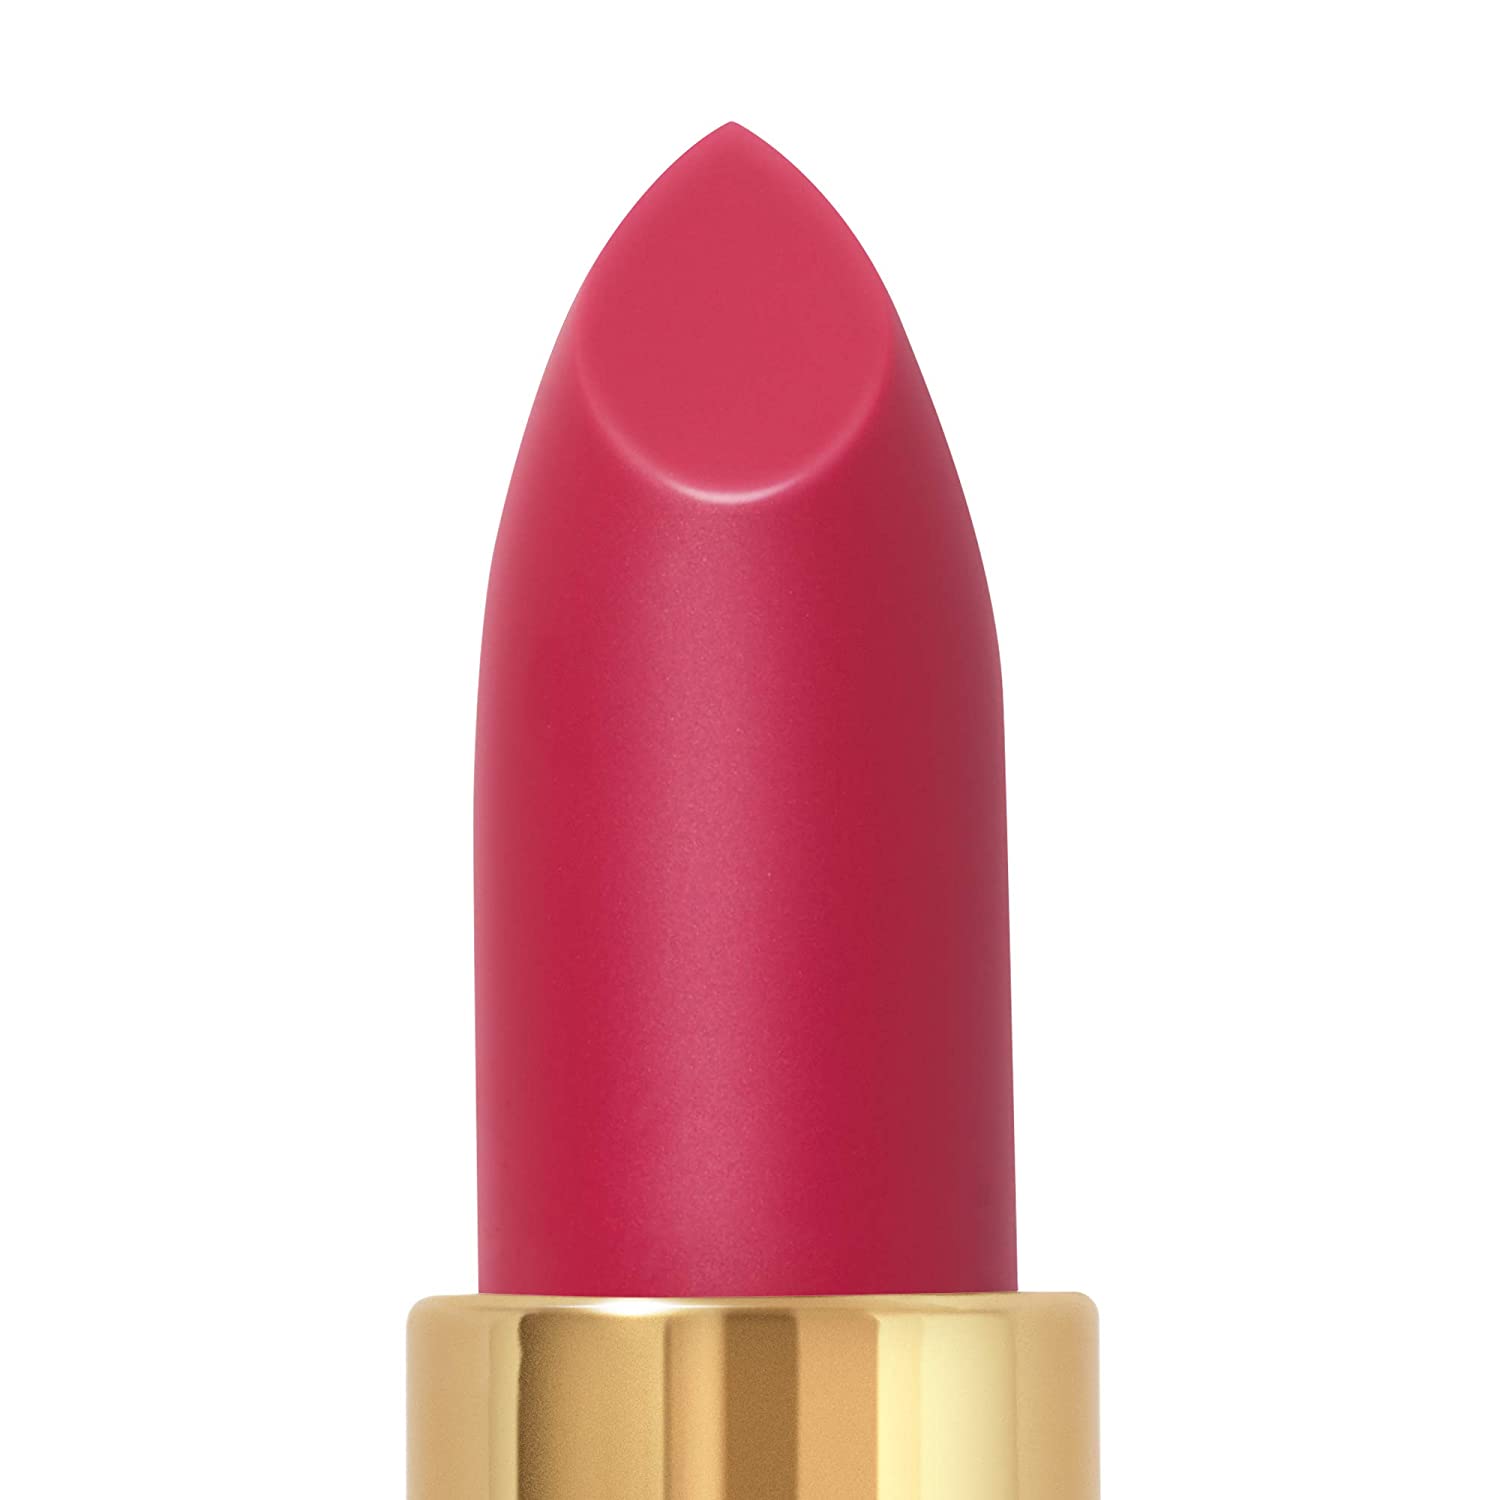 Revlon Super Lustrous Lipstick - Femme Future Pink (4.2g)